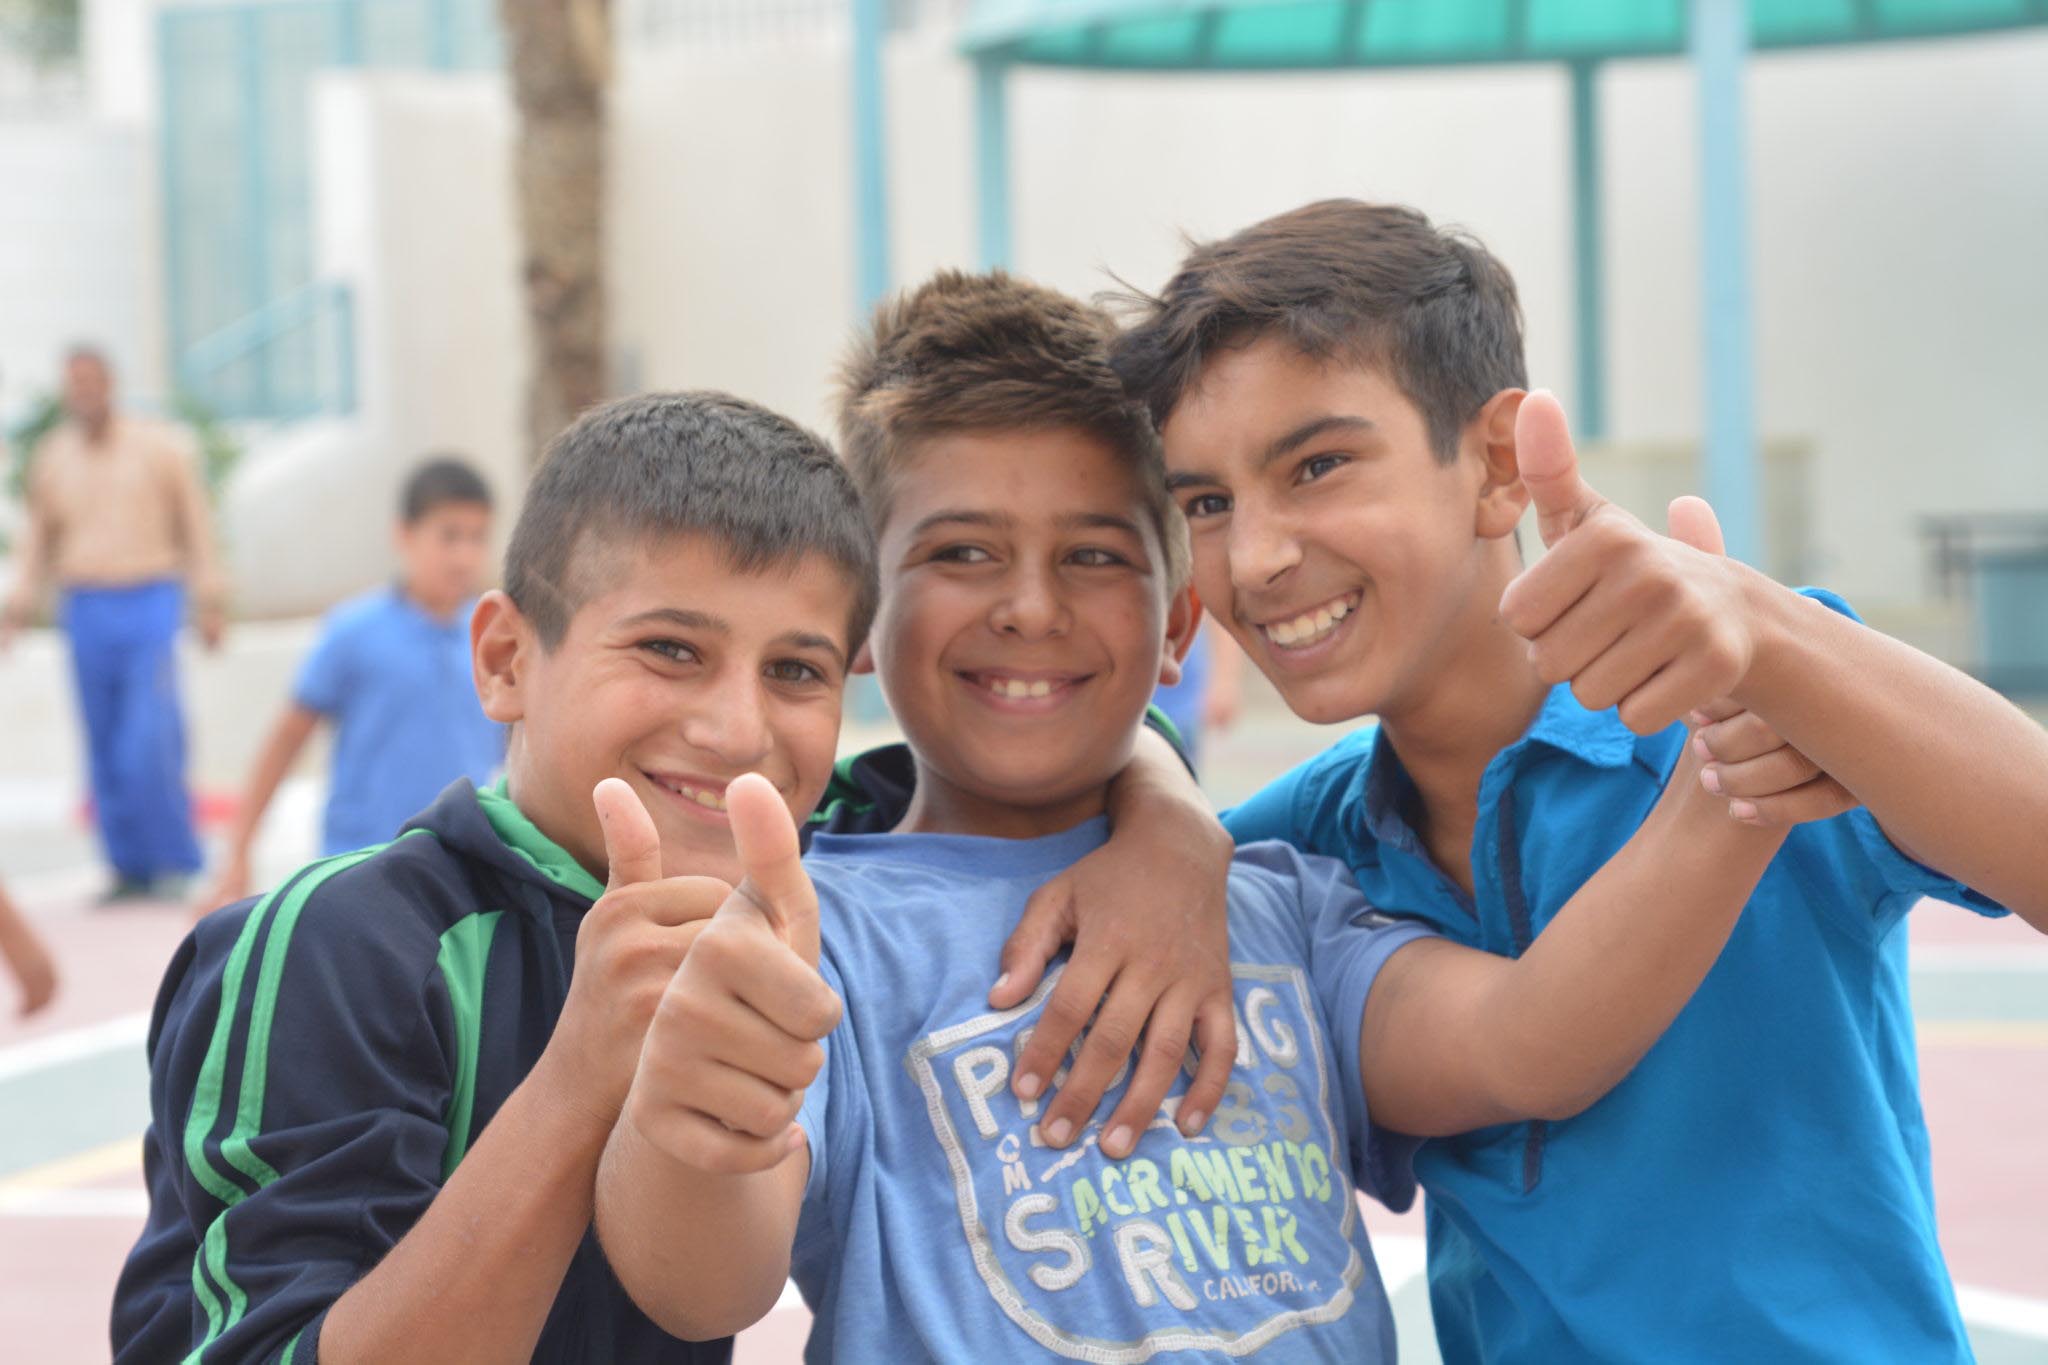 Jalqamous Boys School in Jenin, West Bank.